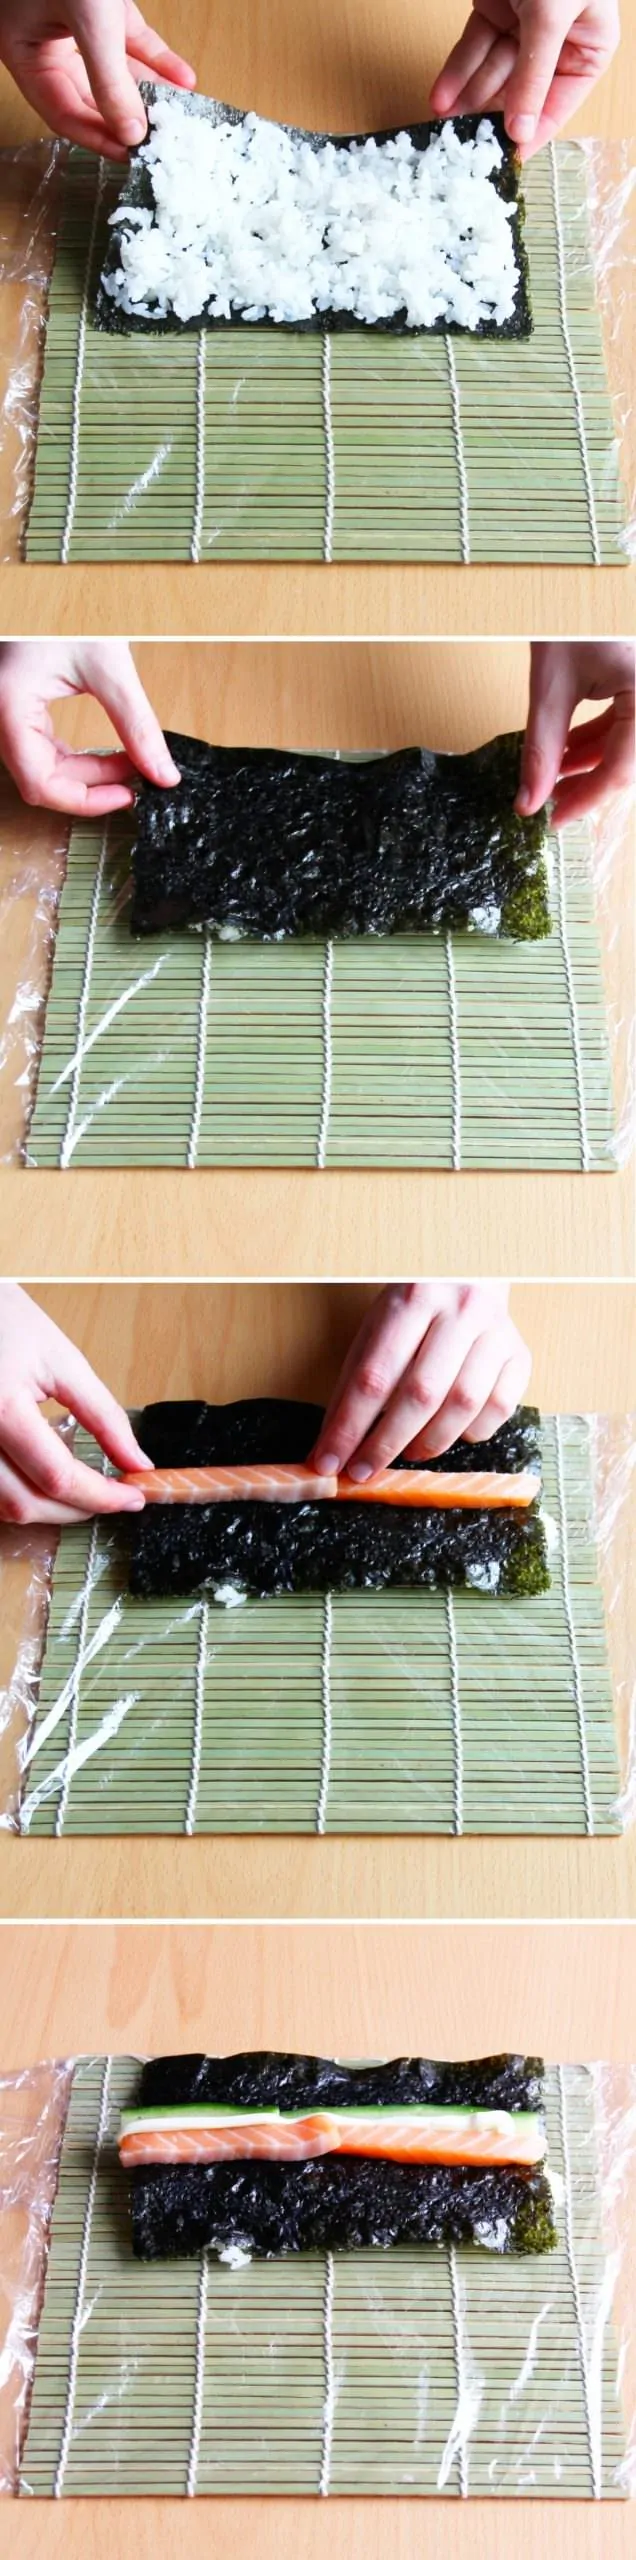 Uramaki Schritt 6 Sushi-Rolle formen